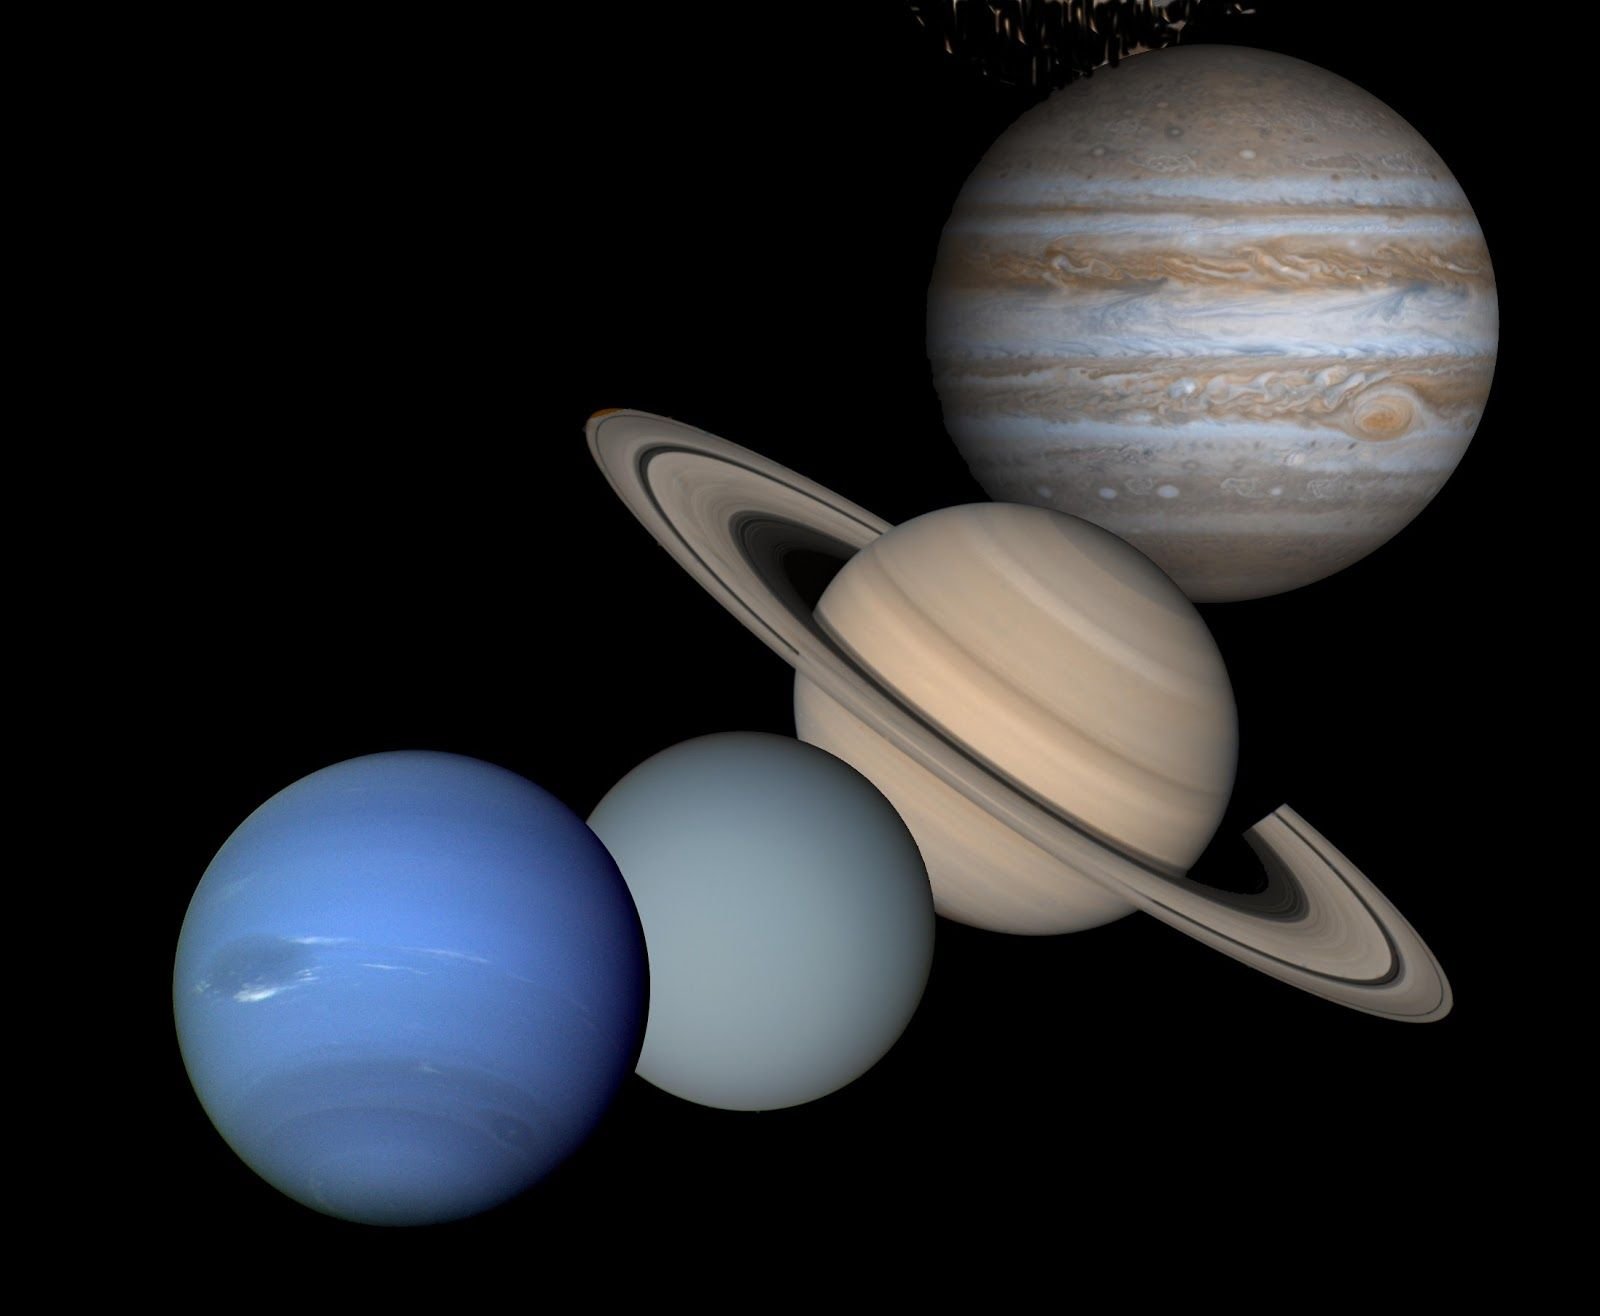 Самая большая система солнечной системы сатурн. Юпитер Сатурн Уран Нептун. Планеты-гиганты (Юпитер, Сатурн). Планеты гиганты Юпитер Сатурн Уран Нептун. Сатурн Уран Нептун.